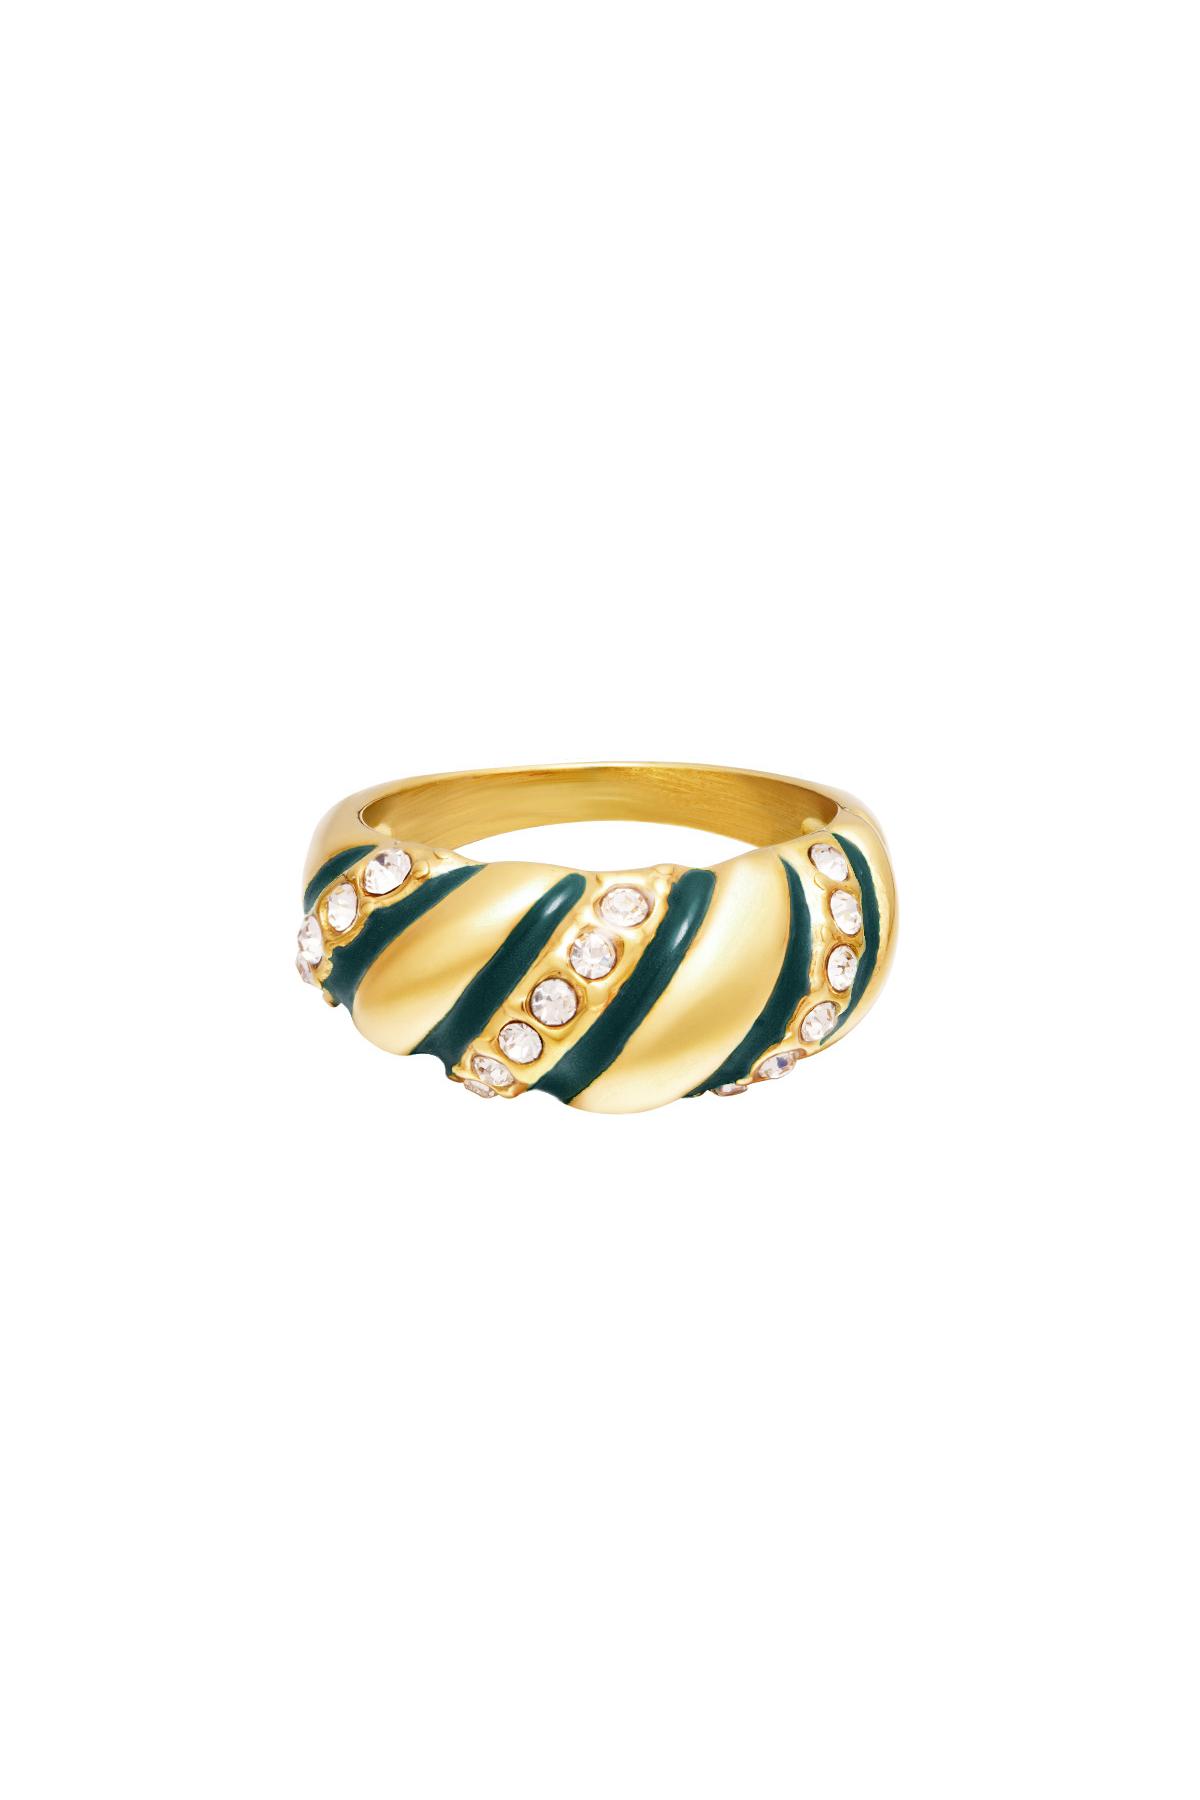 Stainless steel ring statement zircon swirl Green & Gold 16 